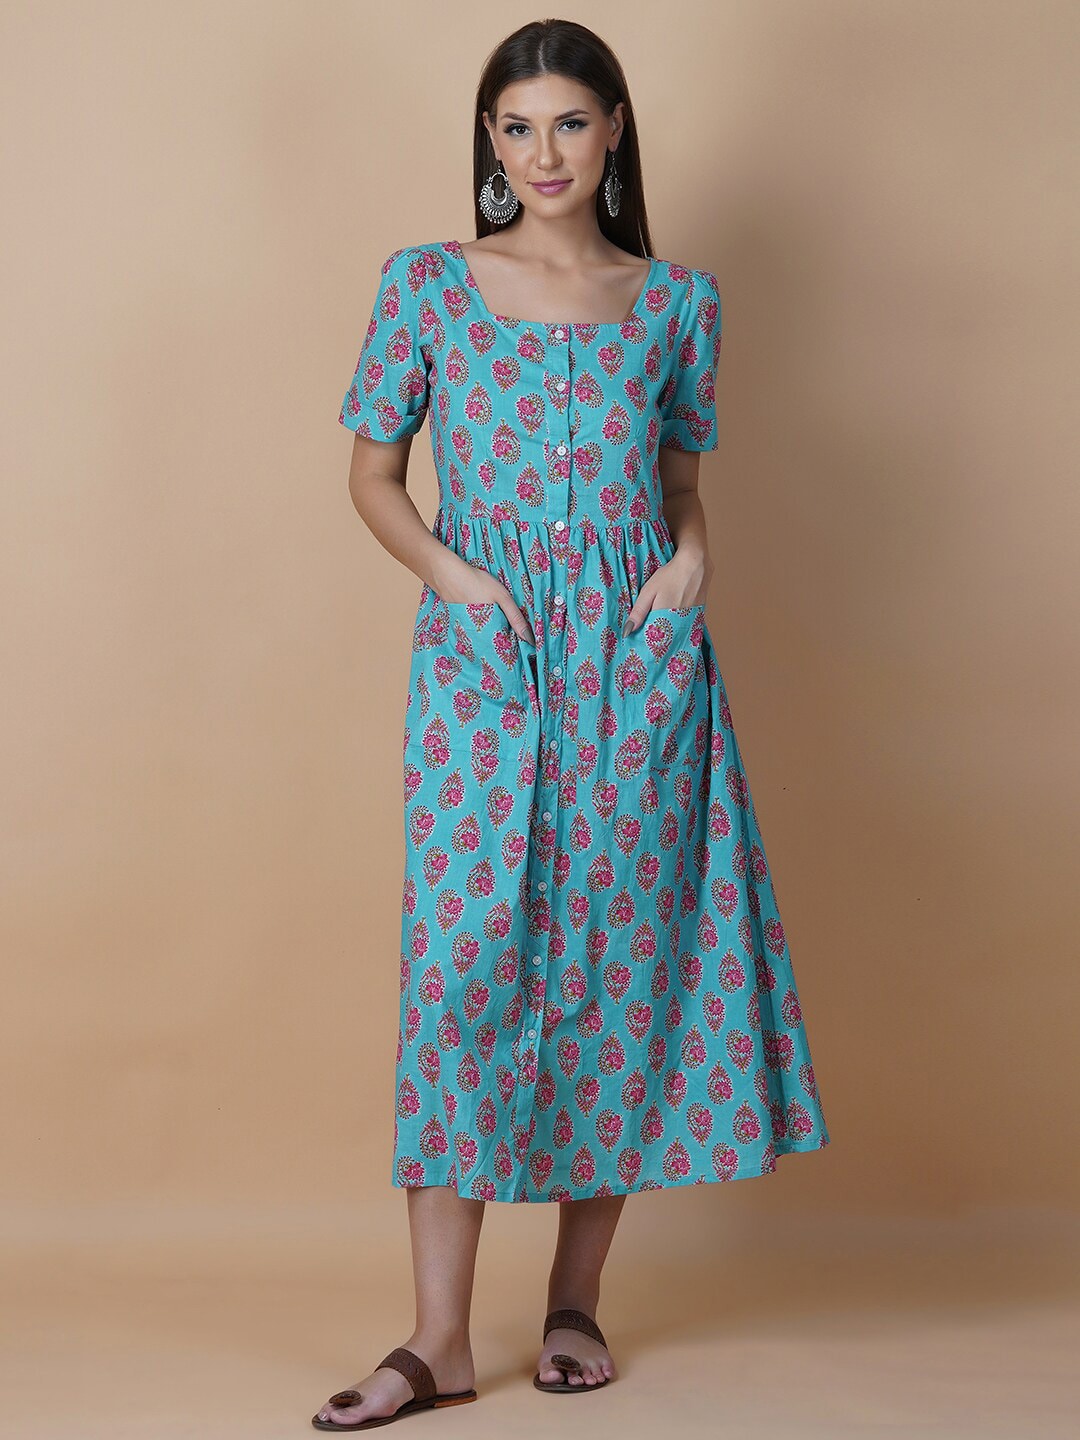 Twilldor Blue Cotton Ethnic Motifs A-Line Midi Dress Price in India